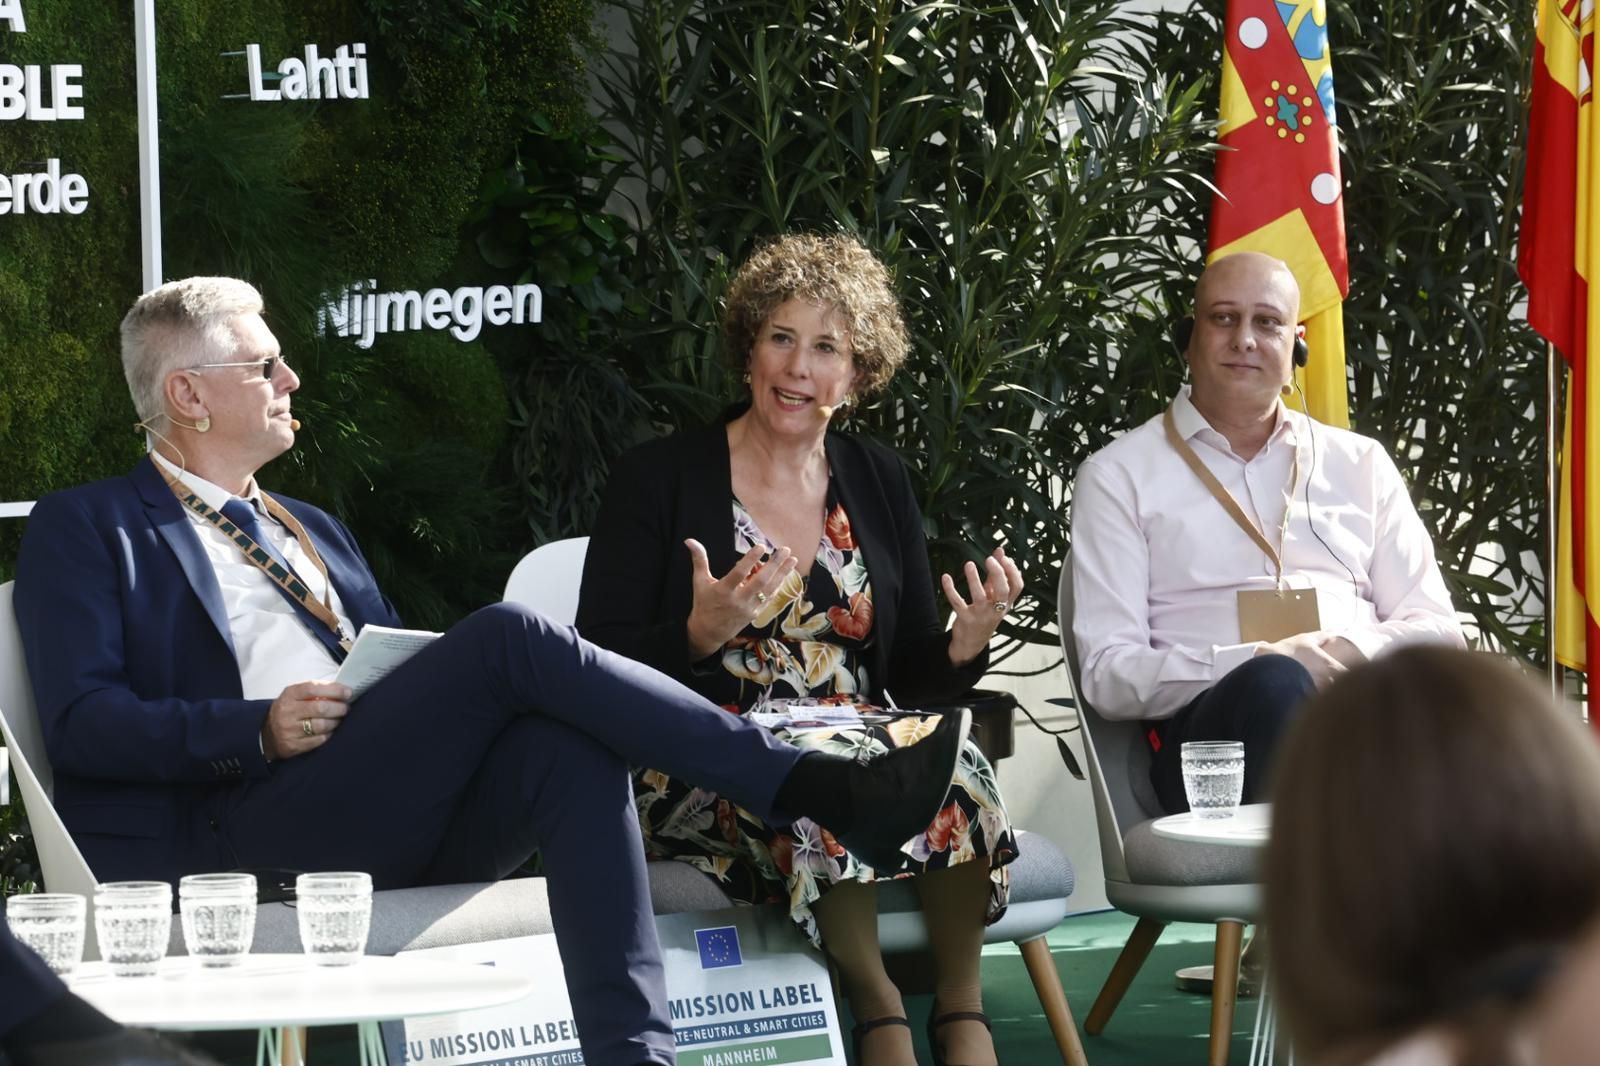 Laa jornada inaugural de València como Capital Verde Europea, en imágenes